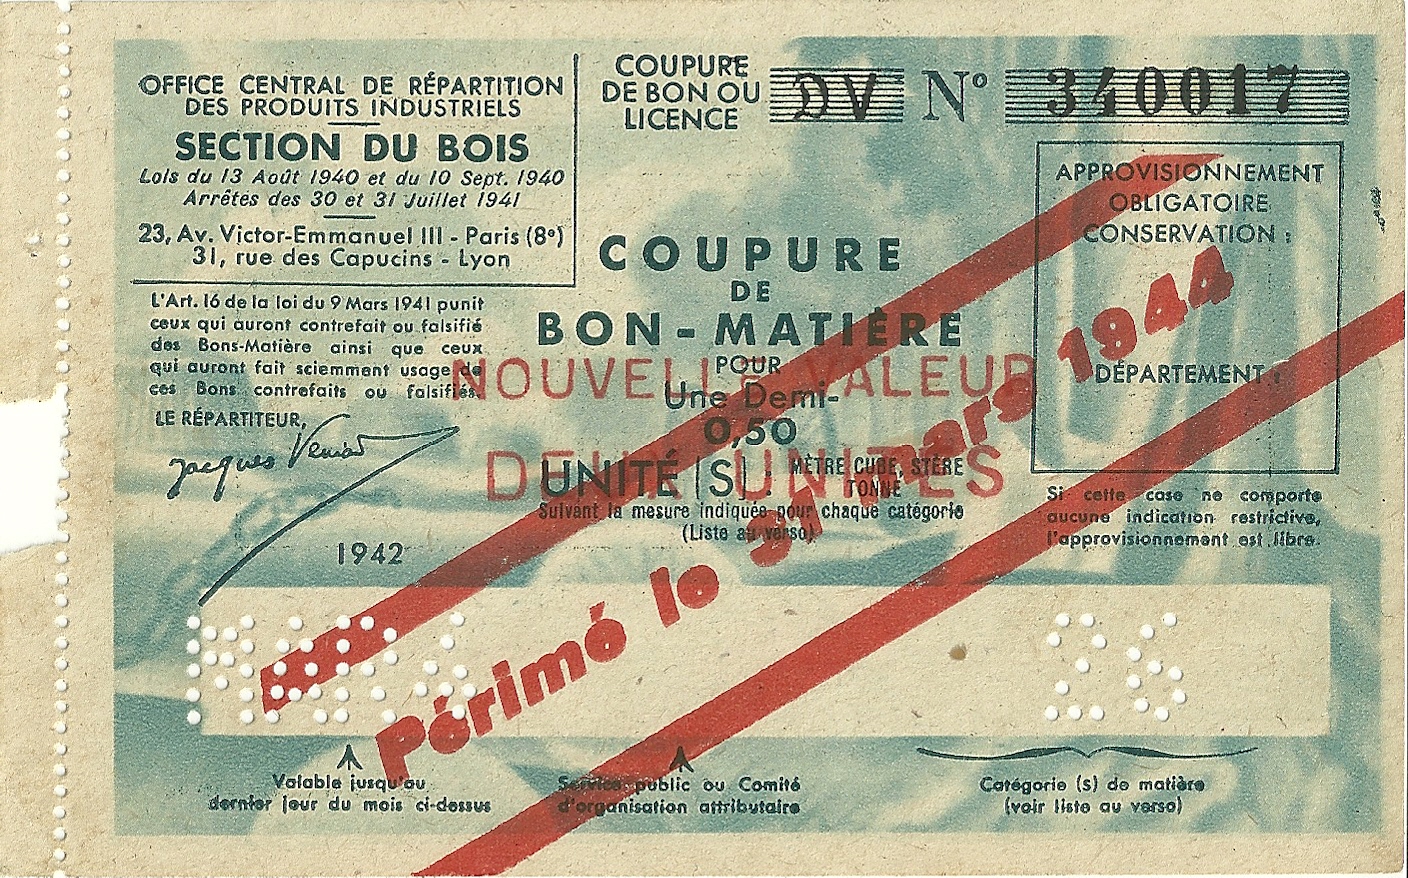 SECTION DU BOIS - COUPURE DV - COUPURE DE BON-MATIERE POUR 0,50 Une Demi UNITE - 340 017